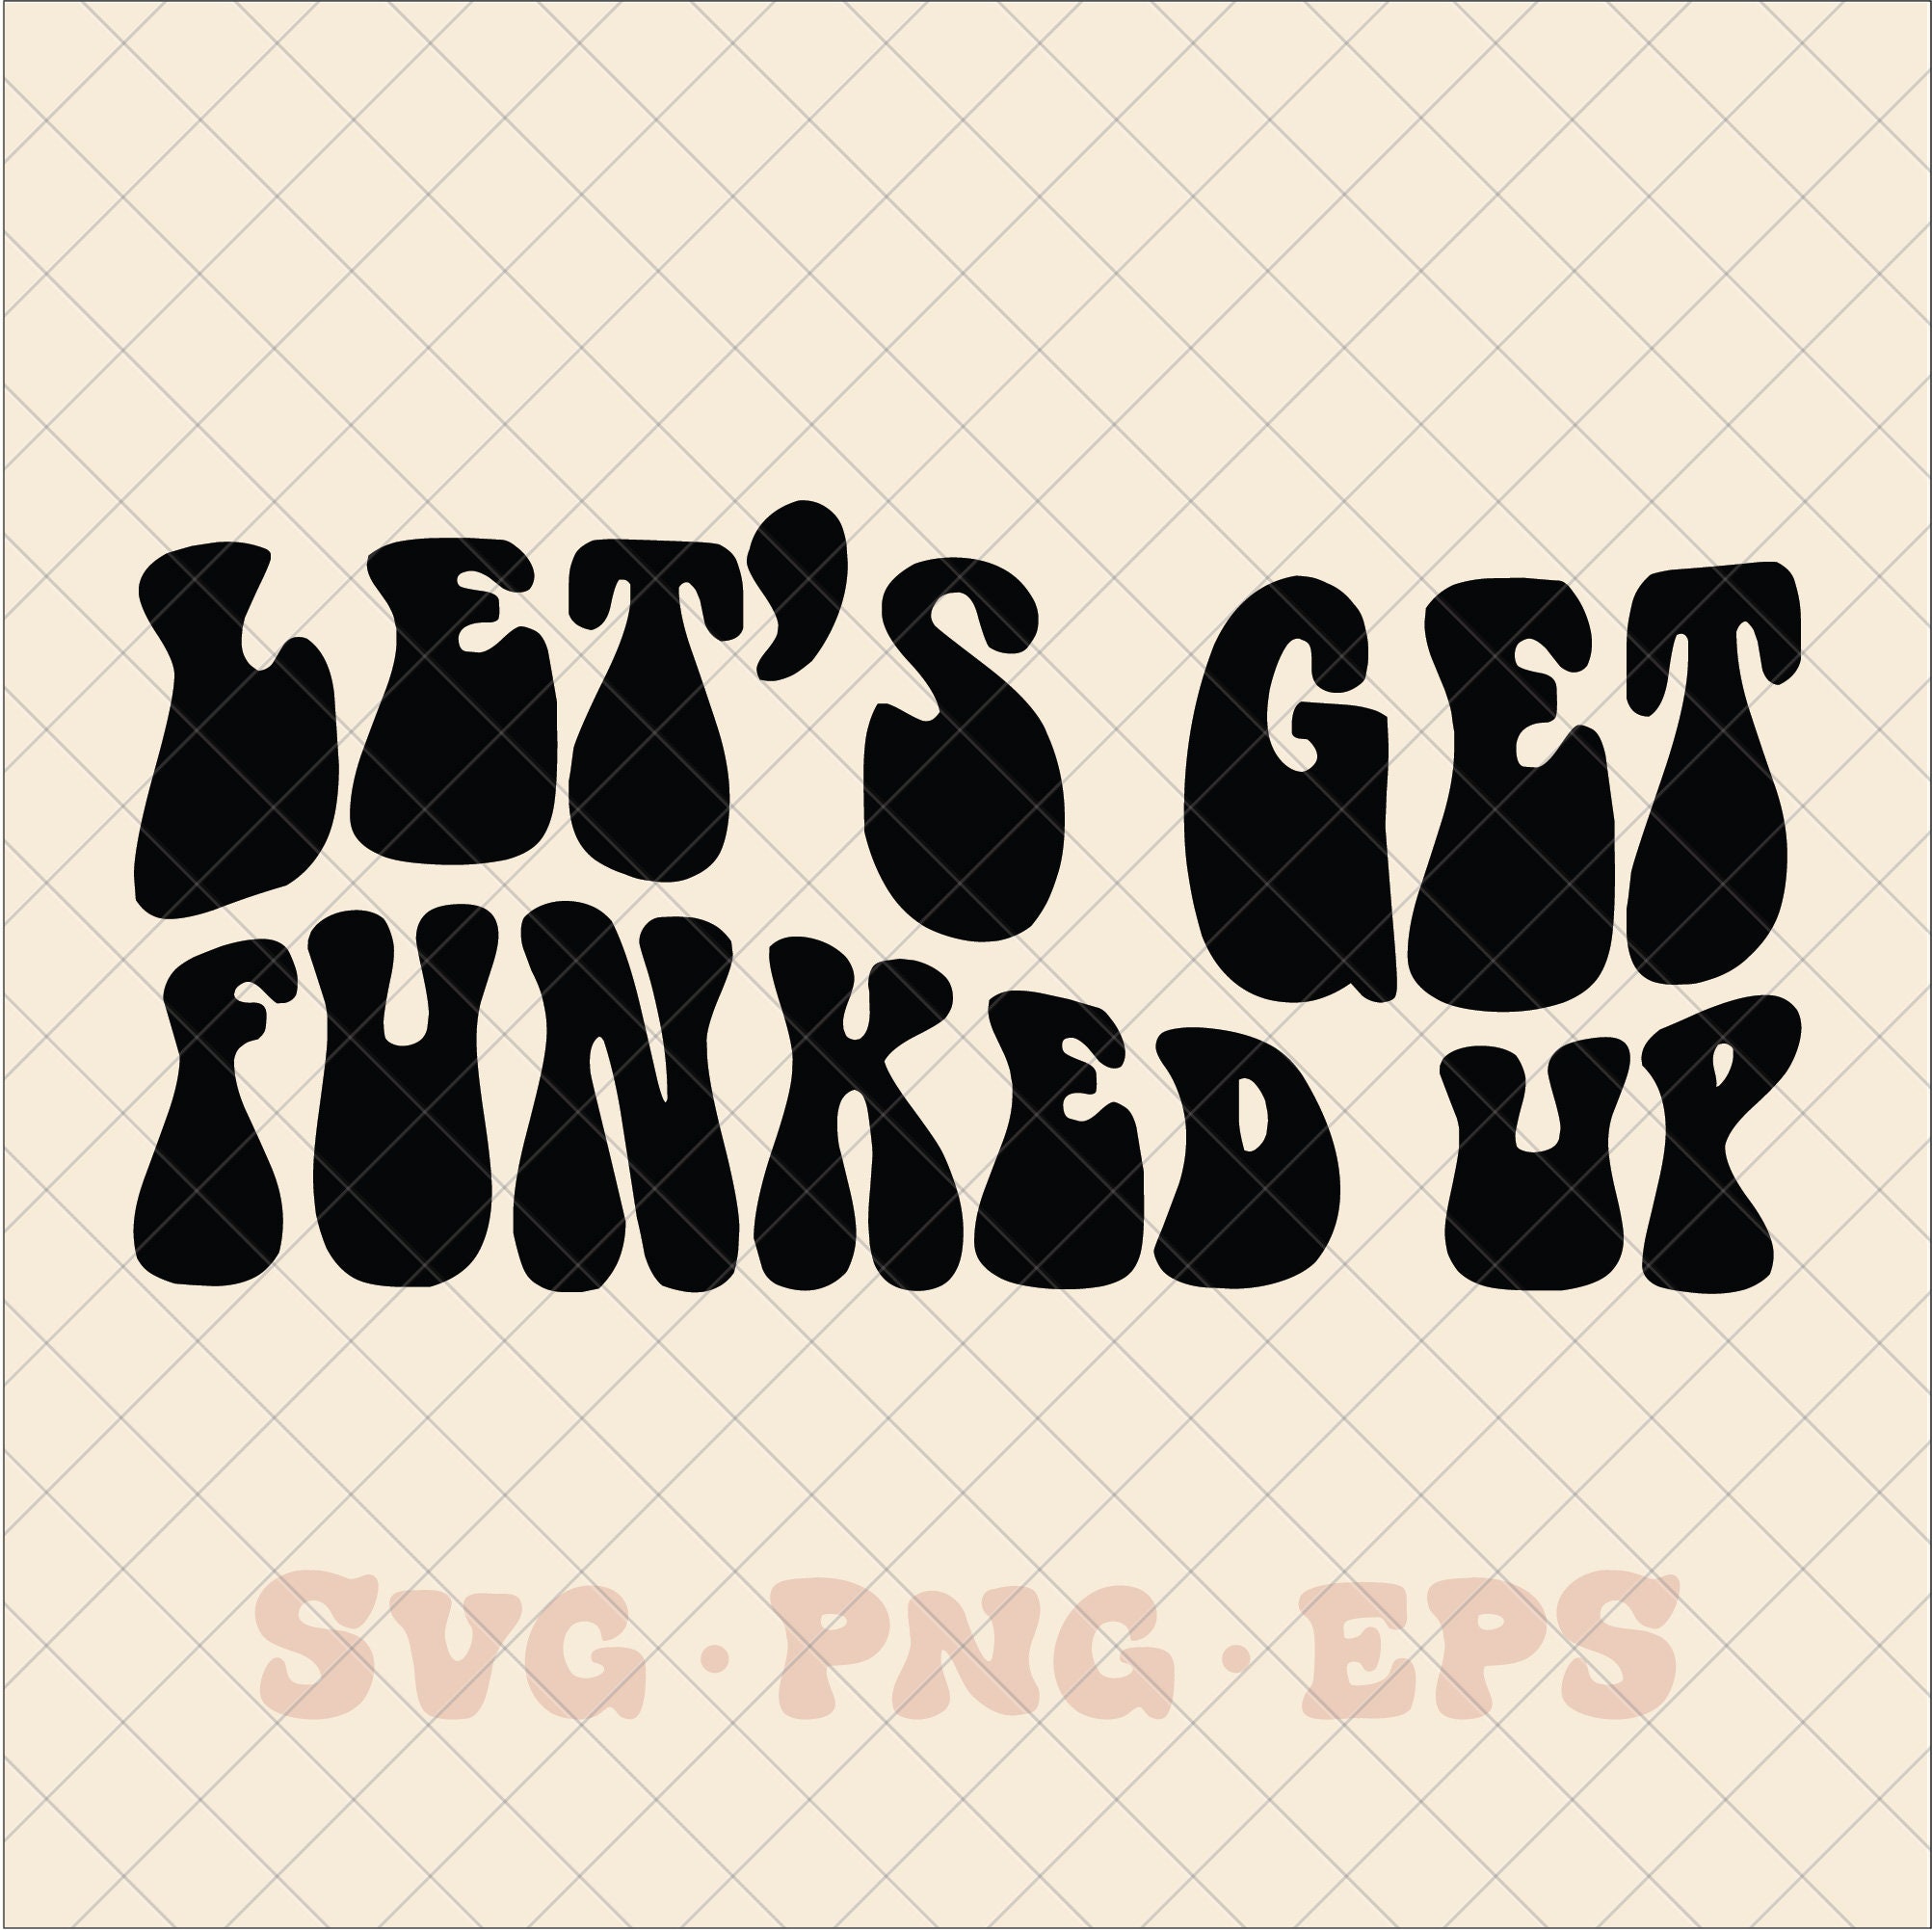 Funk U SVG, Funk SVG, Trending T-Shirt SVG PNG EPS DXF